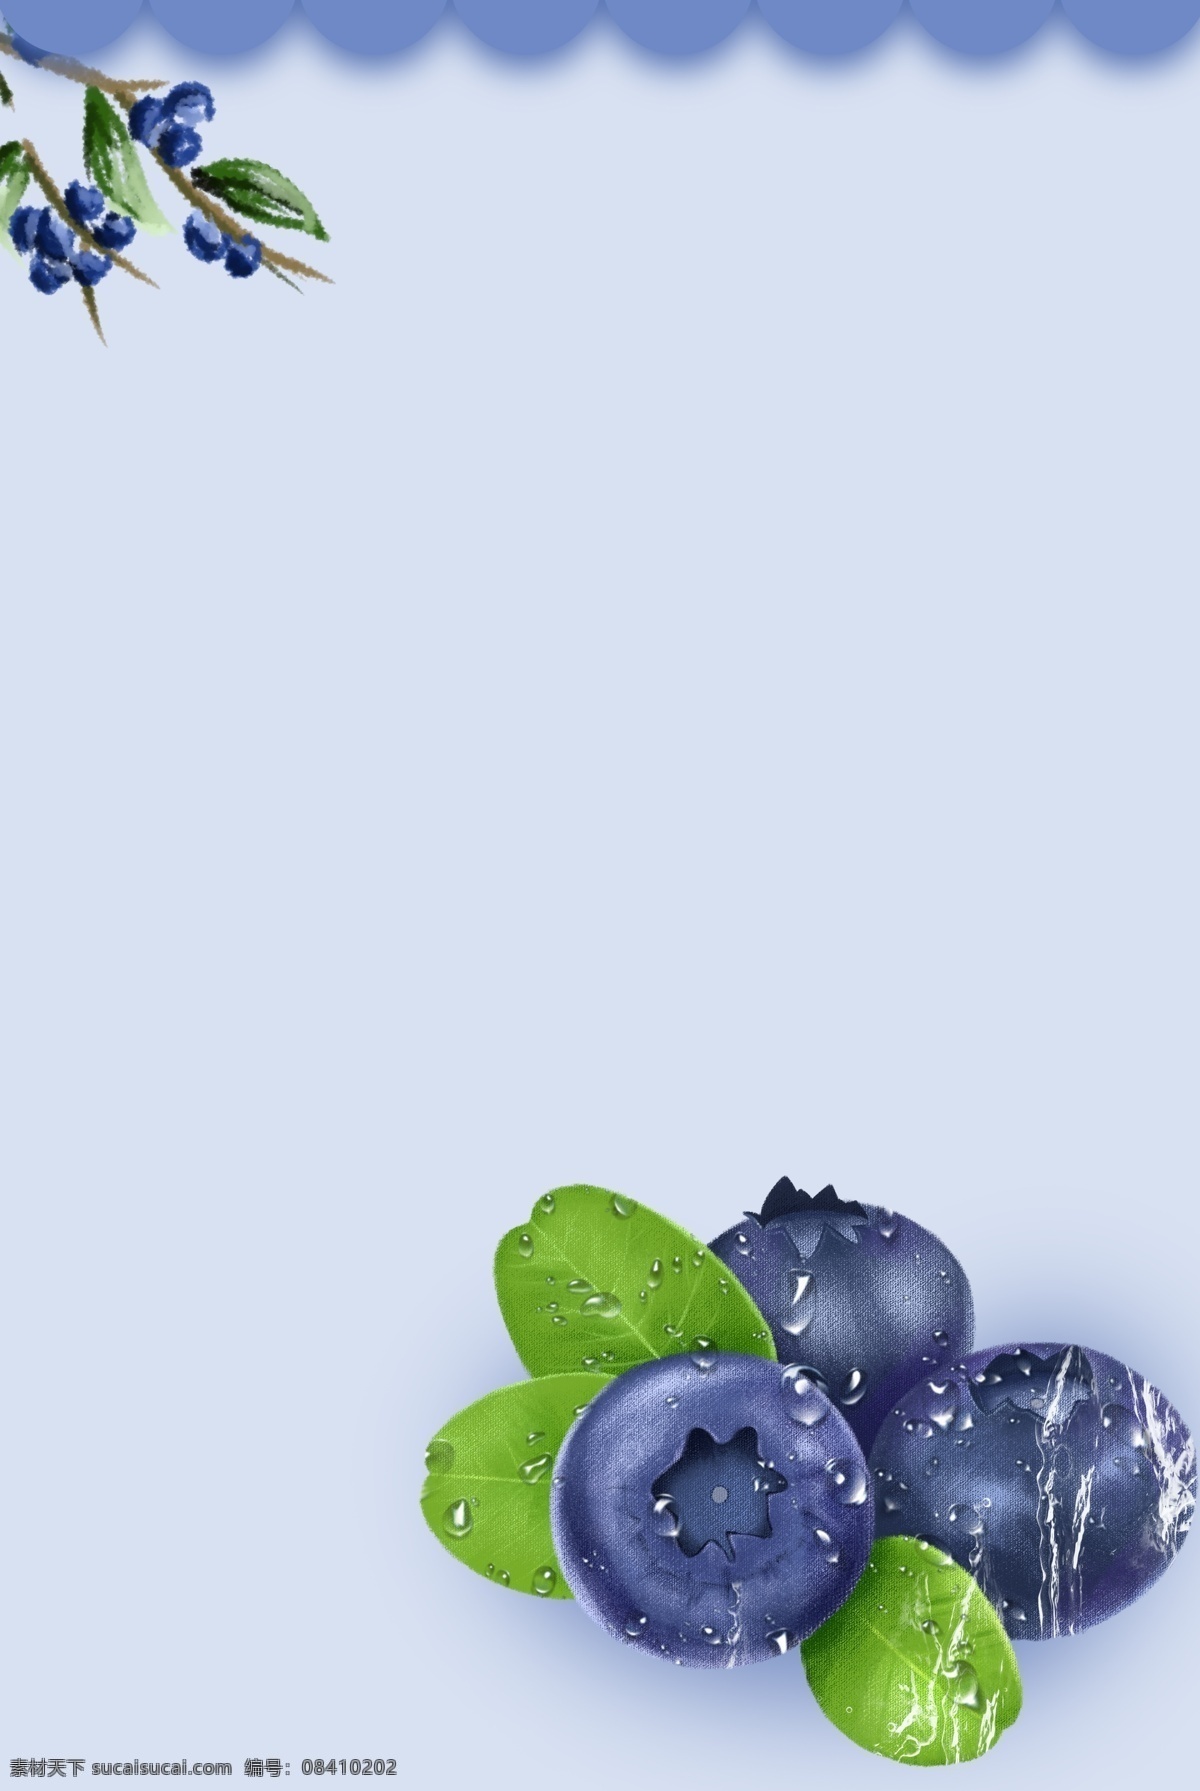 蓝莓 嘟嗜 提子 桑葚 甸果 笃斯 笃斯越桔 笃柿 葡萄 蓝色浆果 覆盆子